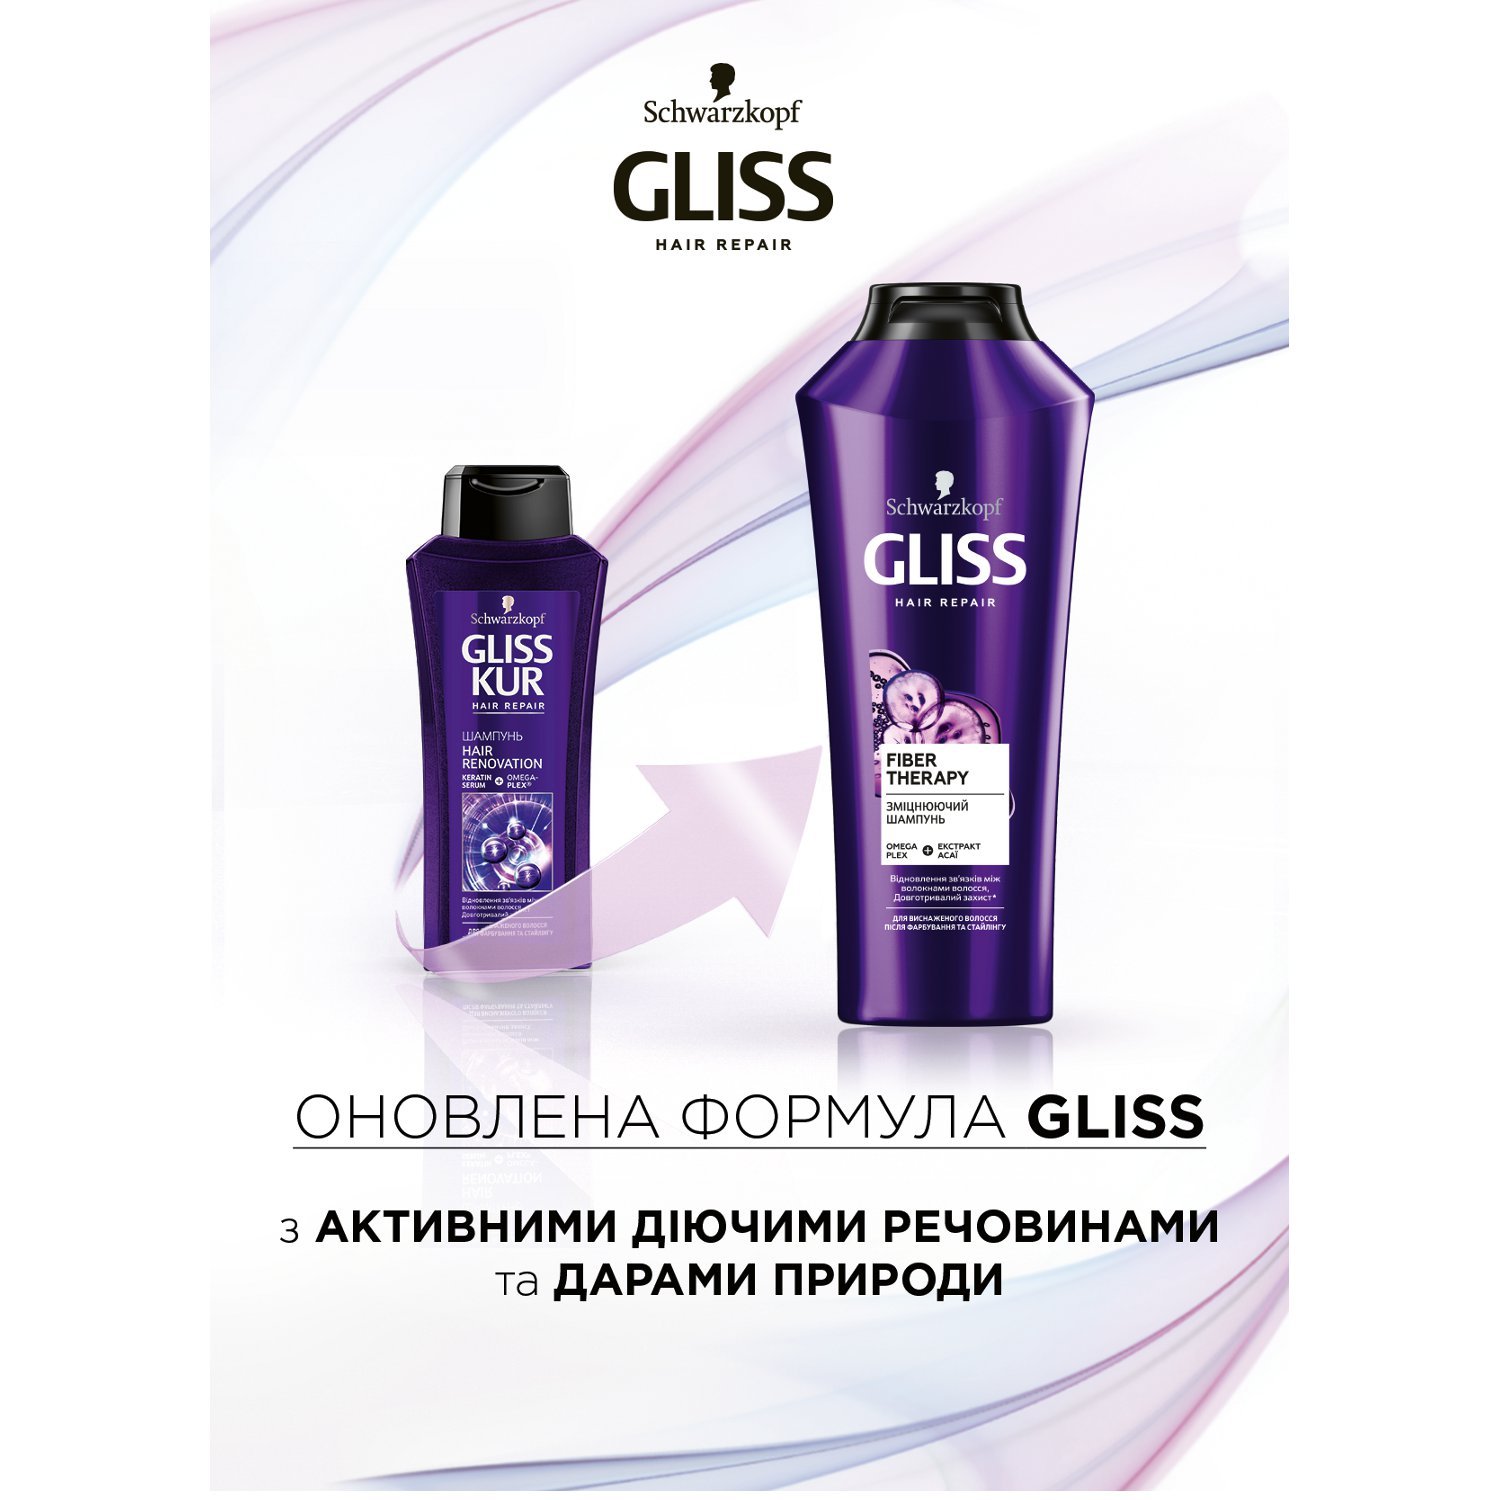 Шампунь Gliss Hair Renovation для ослабленных и истощенных после окрашивания и стайлинга волос, 250 мл - фото 2